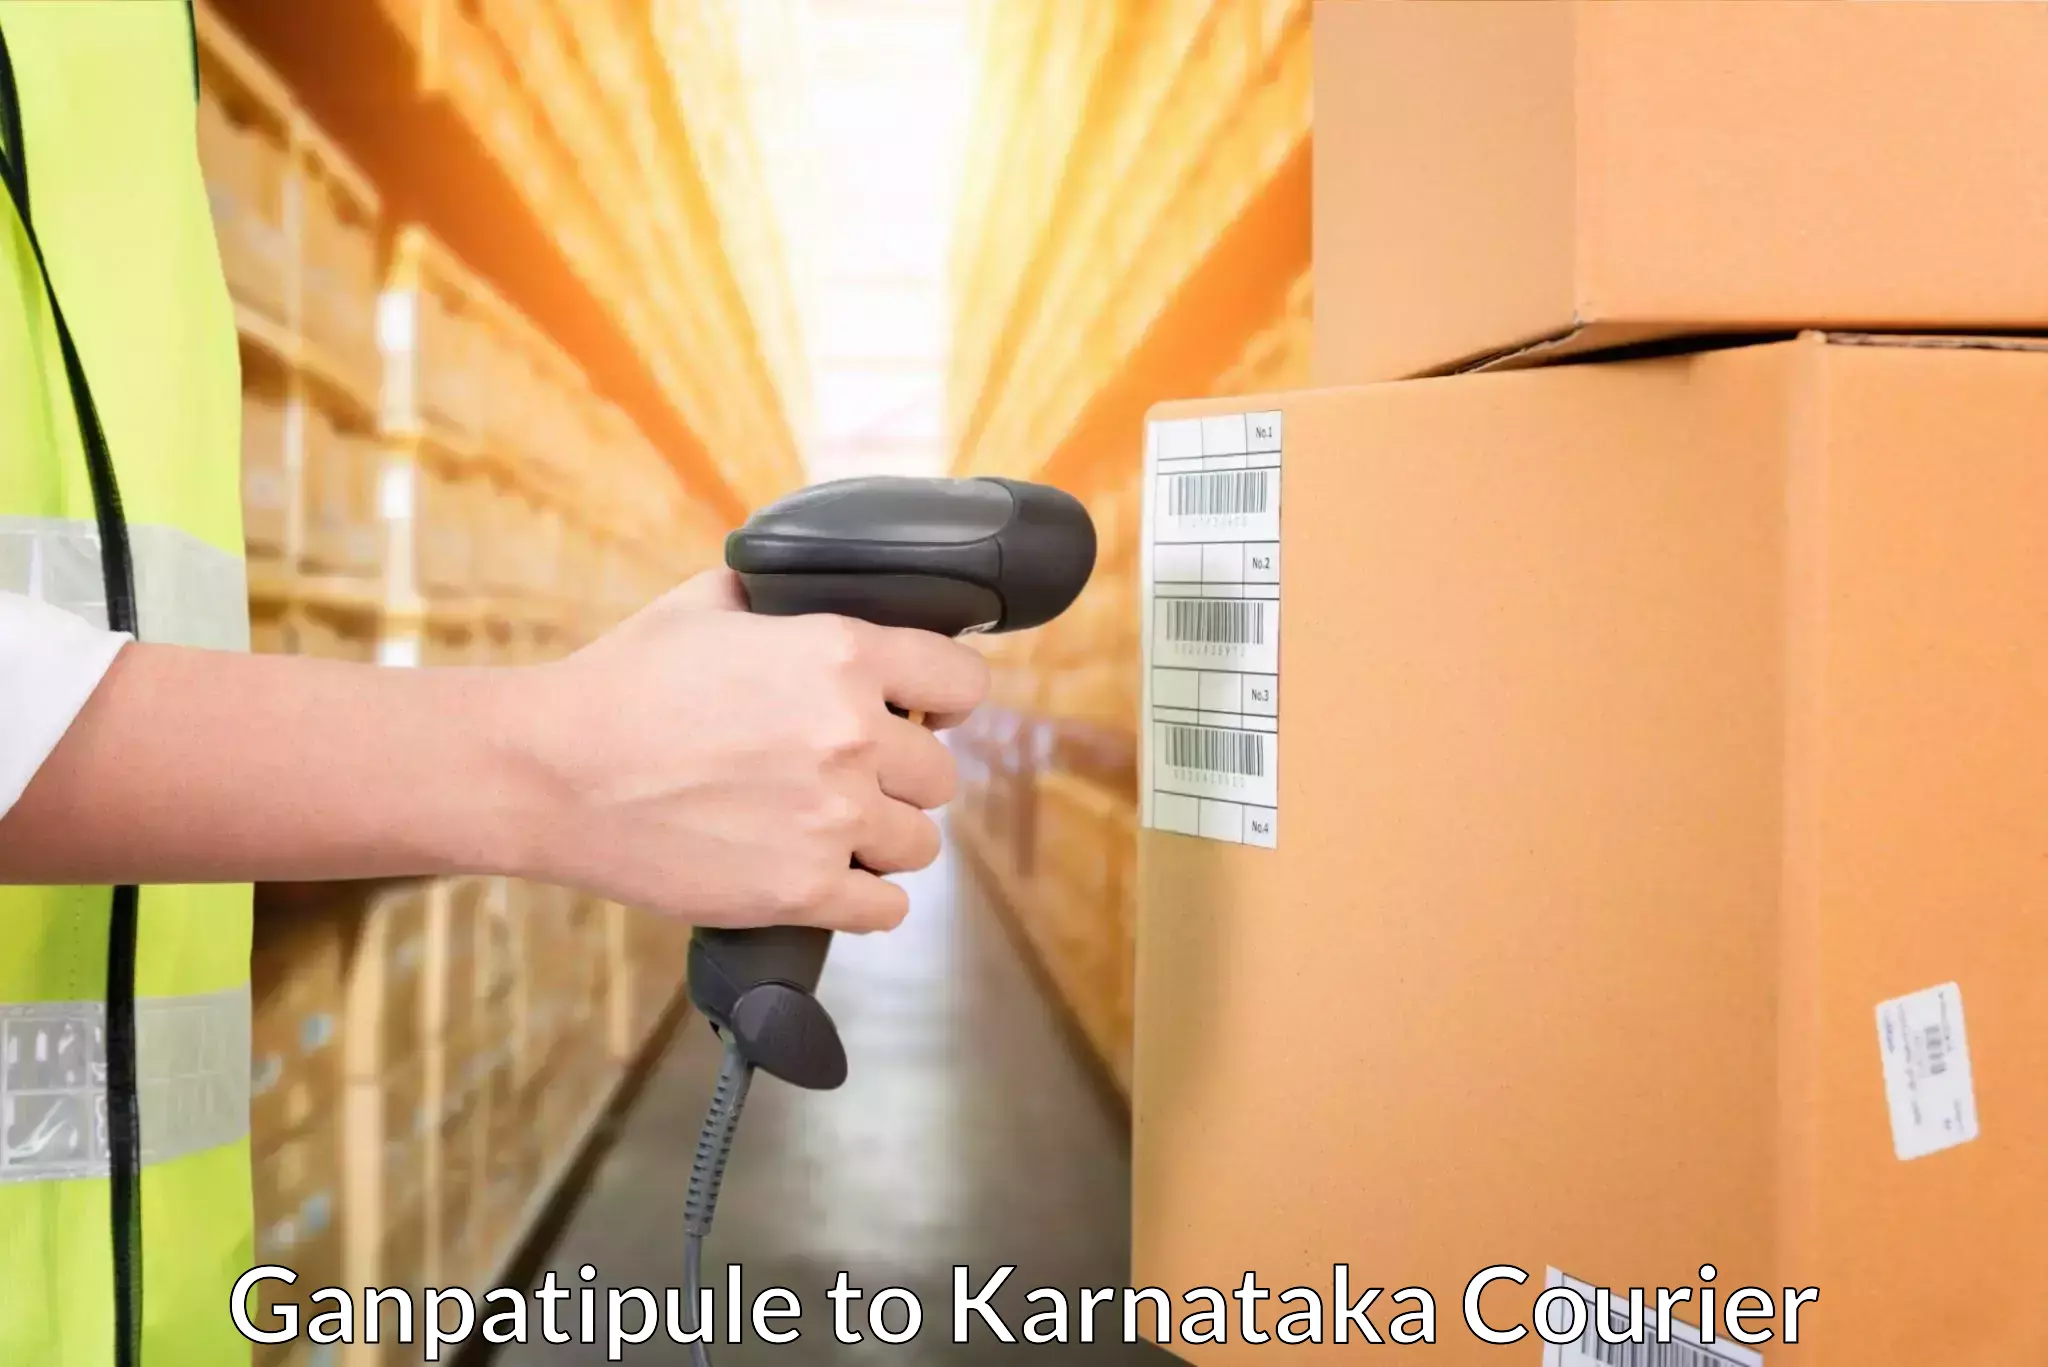 Efficient cargo services Ganpatipule to Rattihalli